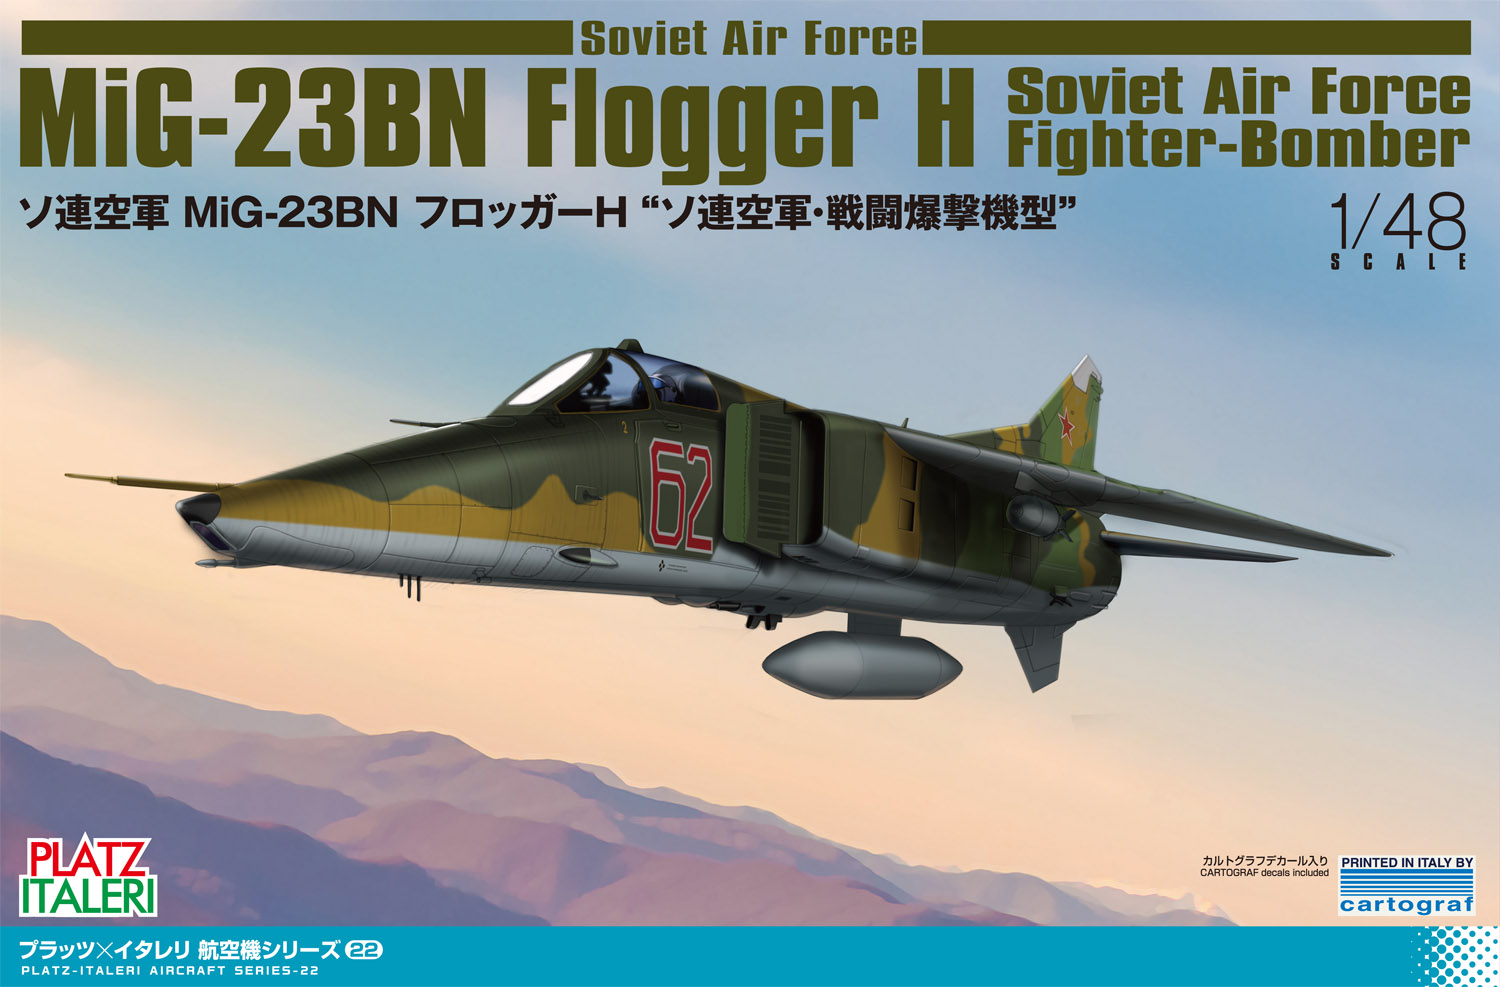 1/48 ソ連空軍 MiG-23BN フロッガーH "ソ連空軍･戦闘爆撃機型" - ウインドウを閉じる